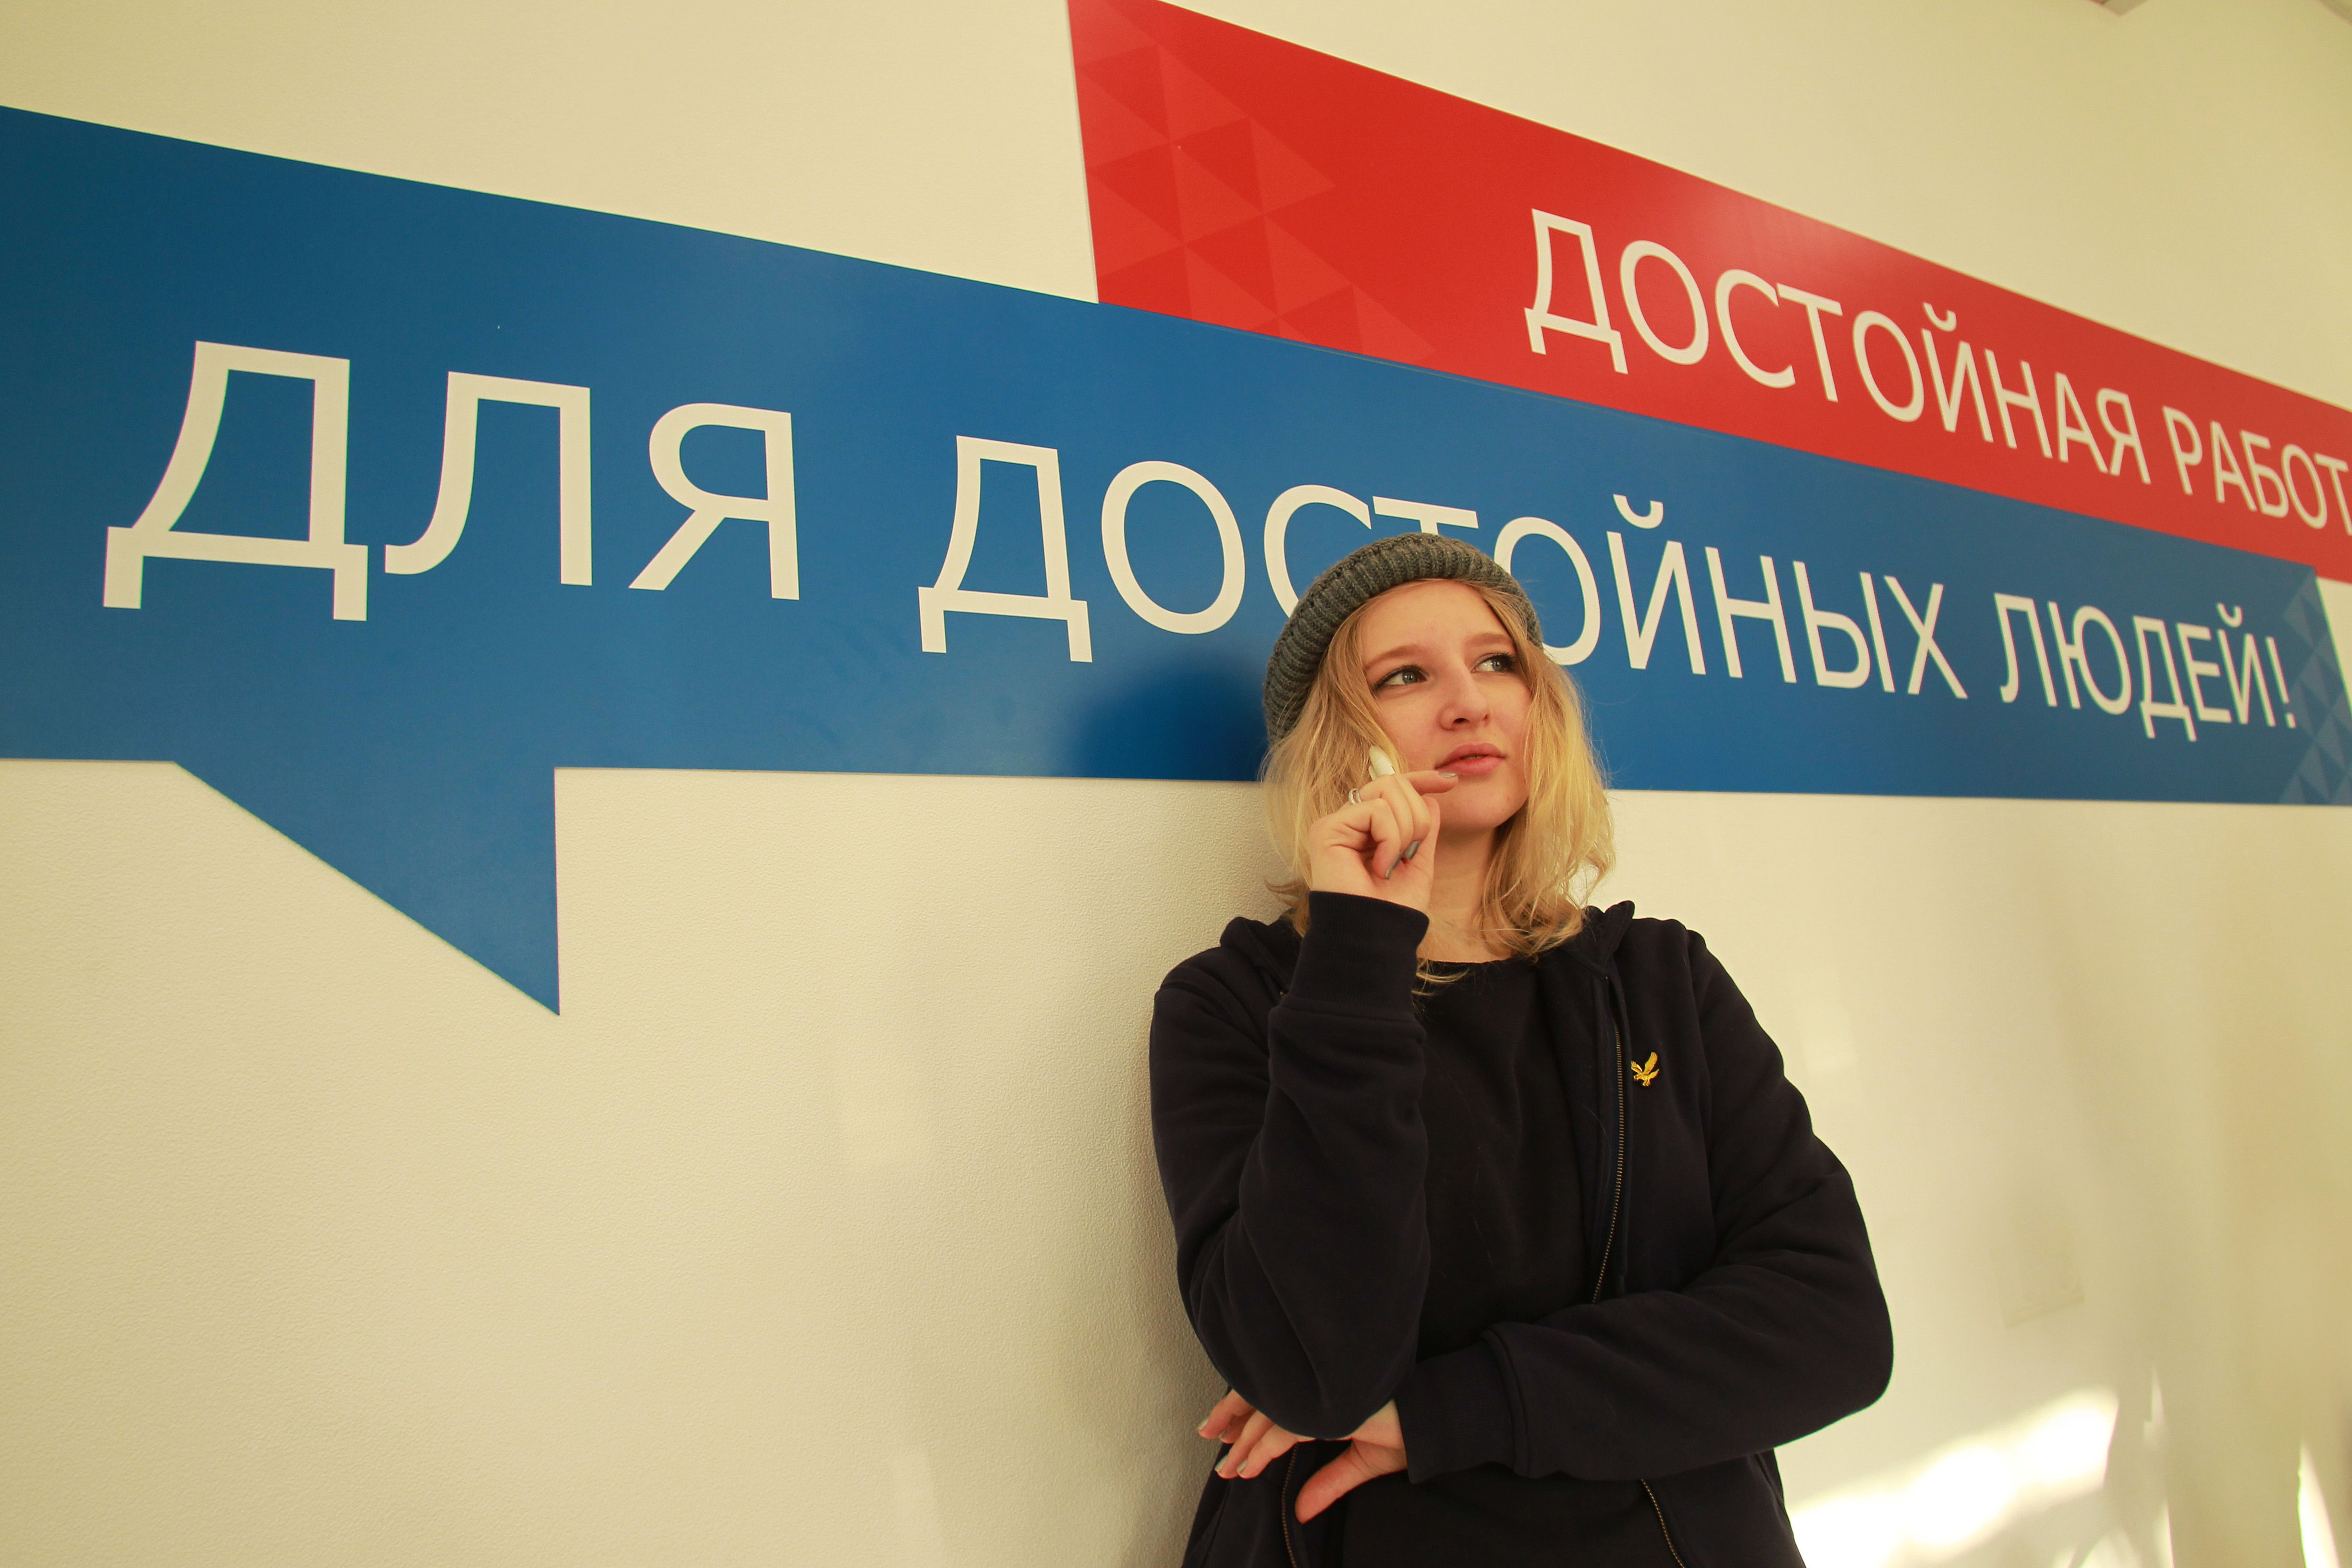 Студенты Москвы получили шанс на быстрое трудоустройство